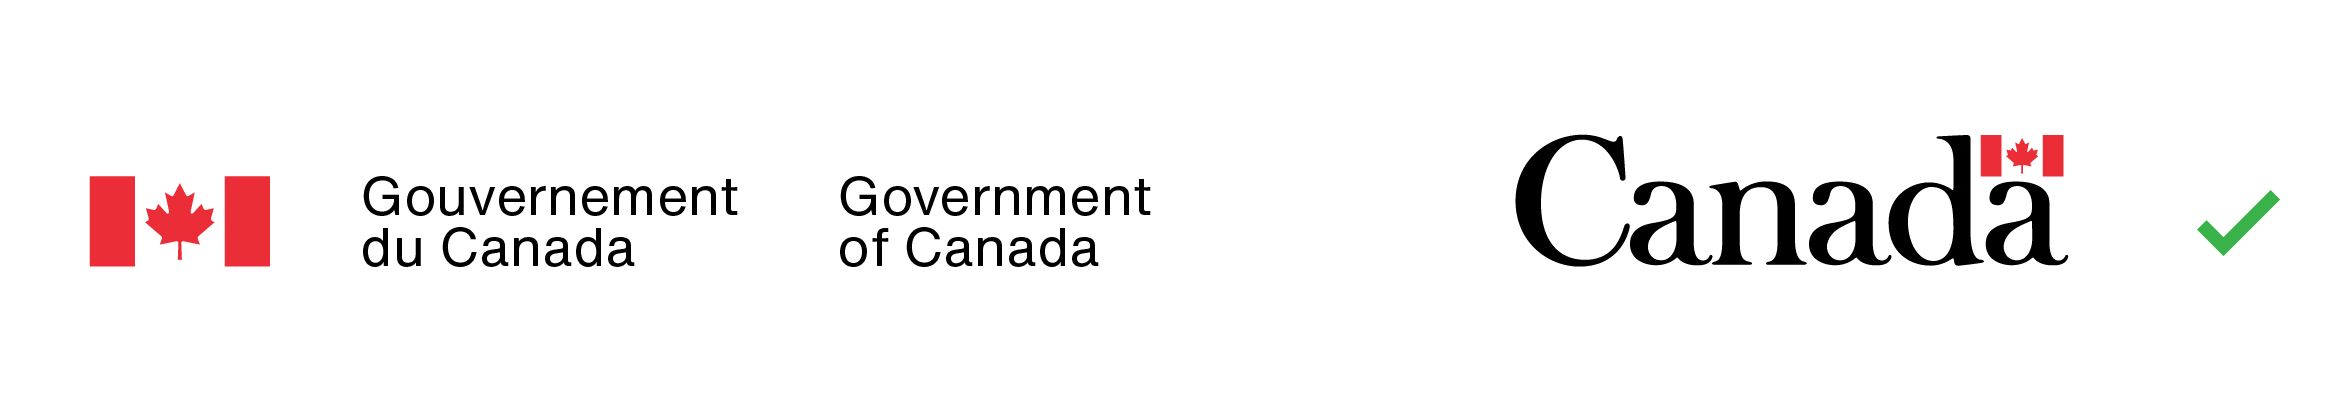 Exemple du bon jumelage de couleurs (les couleurs utilisées pour le symbole du drapeau et le texte dans la signature du gouvernement du Canada sont identiques à celles utilisées dans le mot symbole « Canada »).